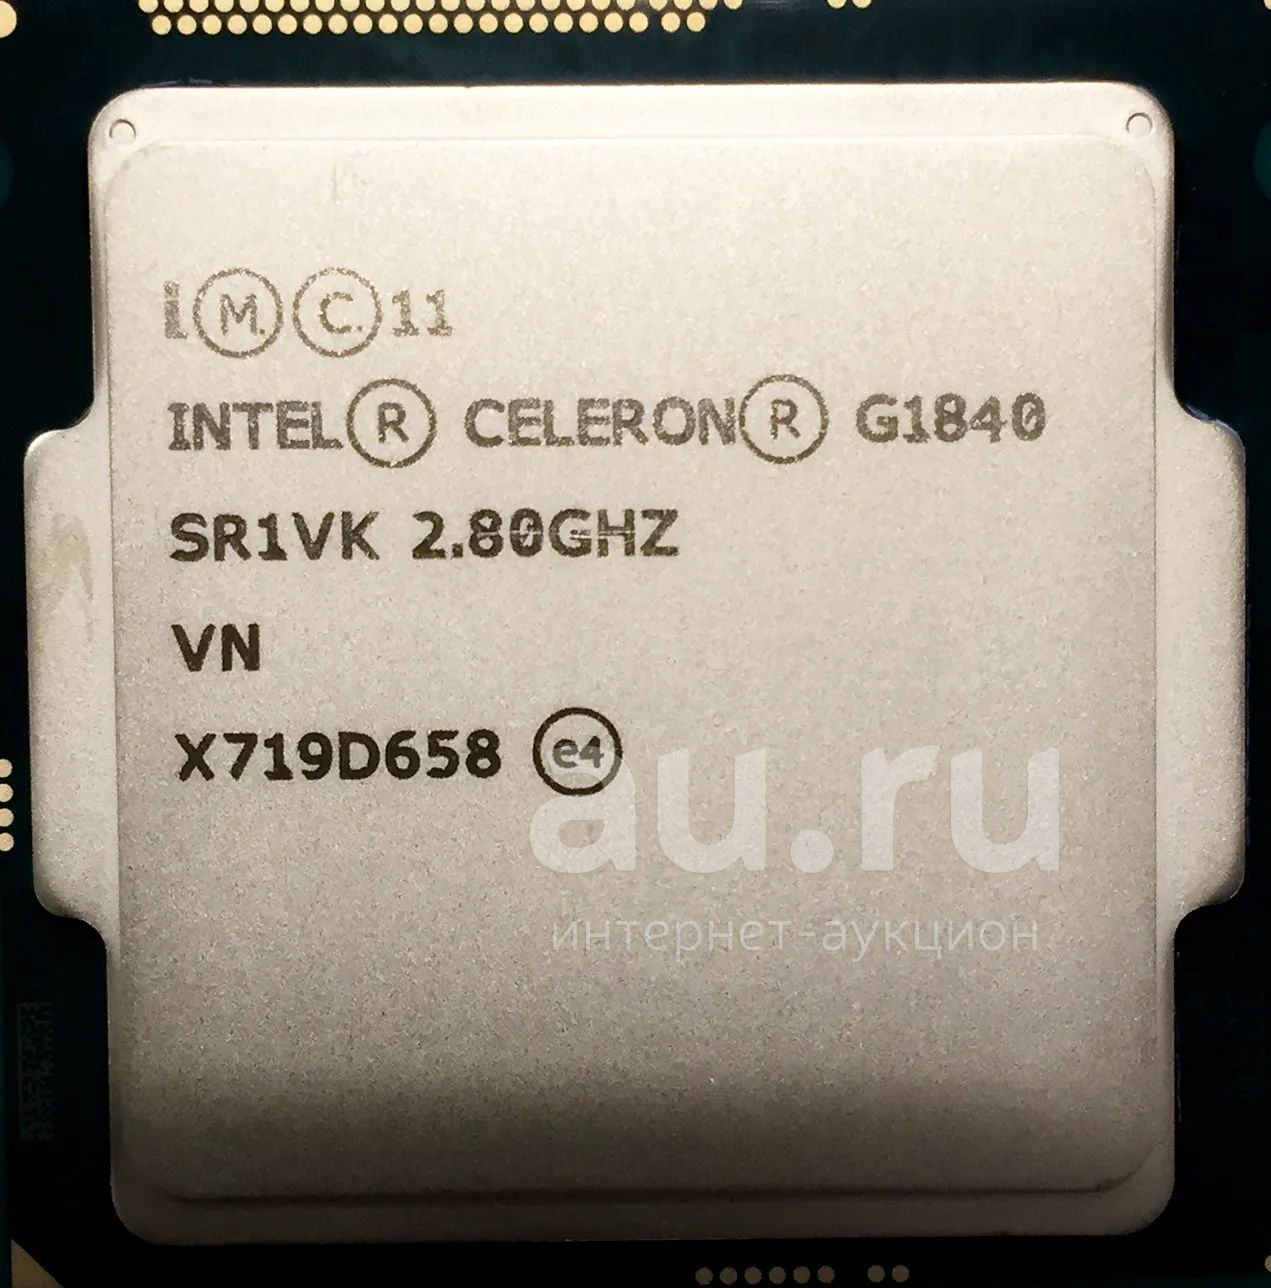 Интел 3570